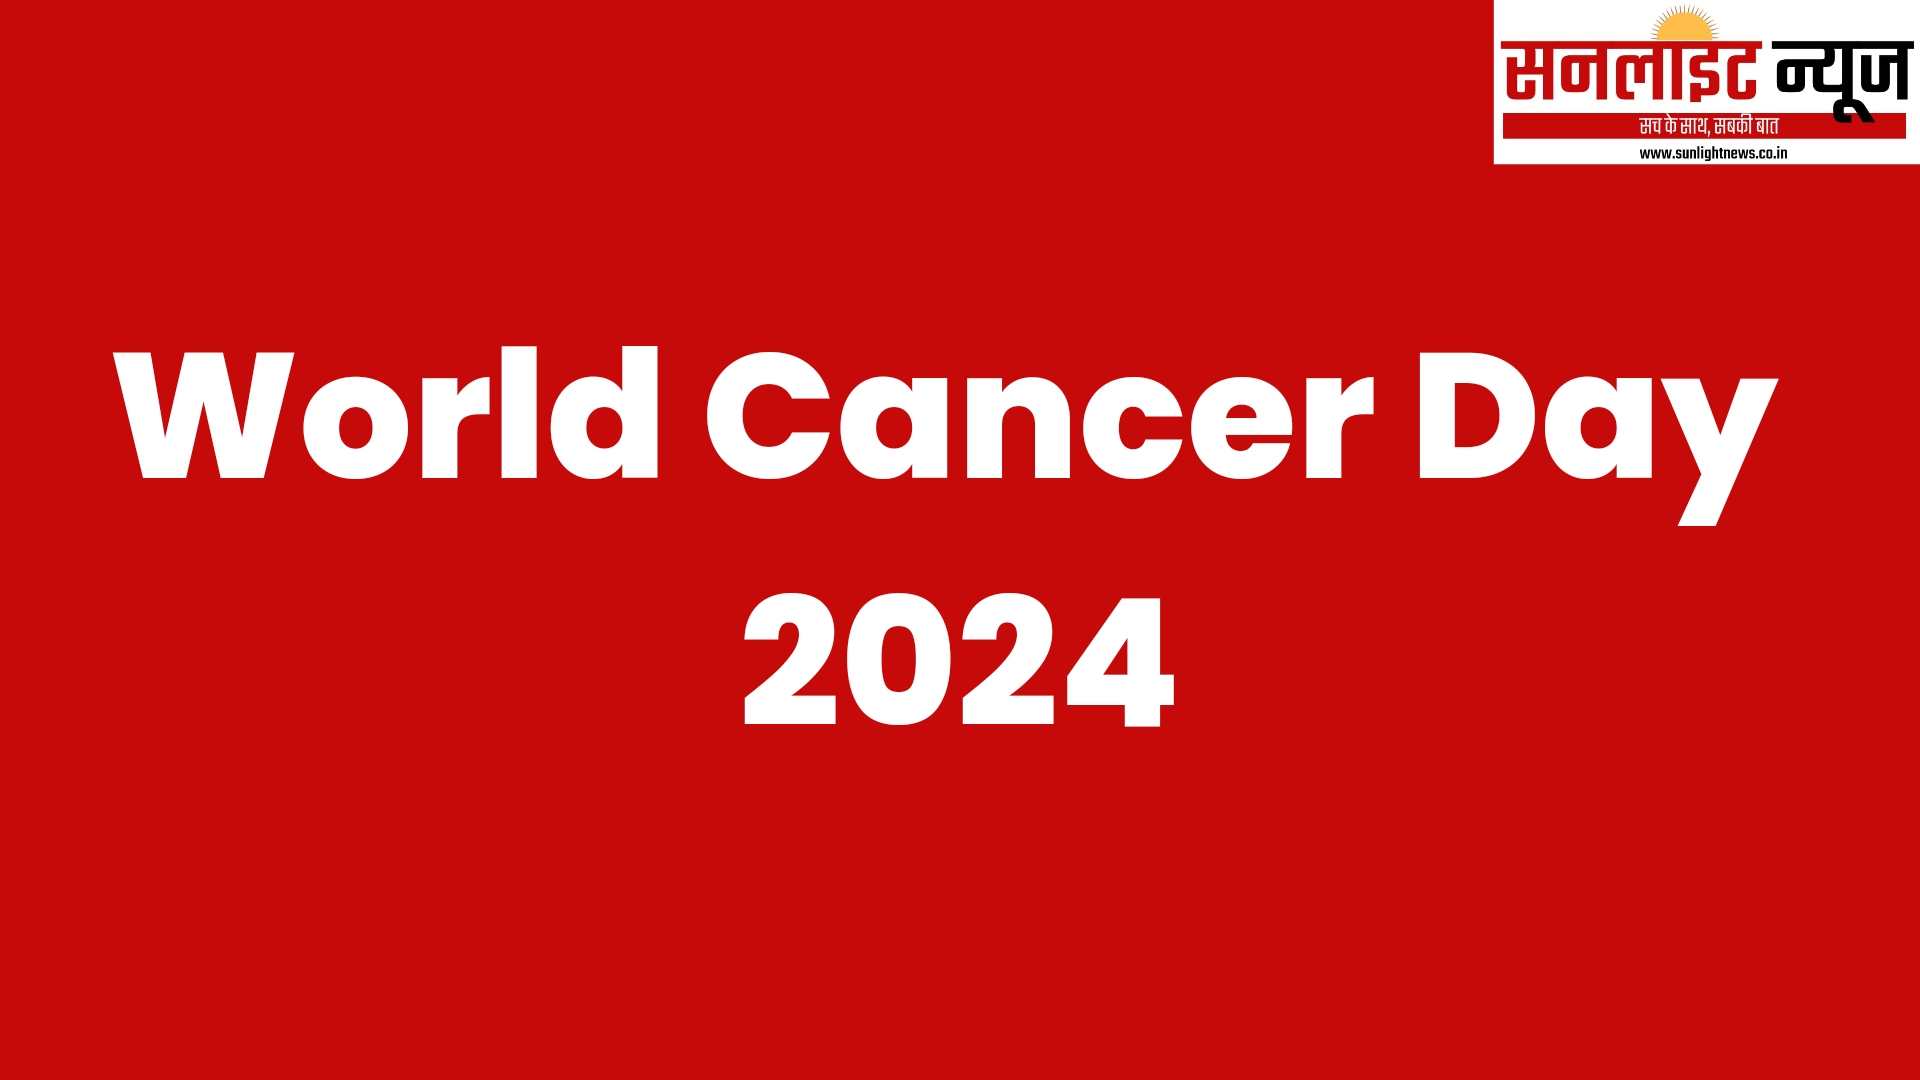 World Cancer Day 2024 -